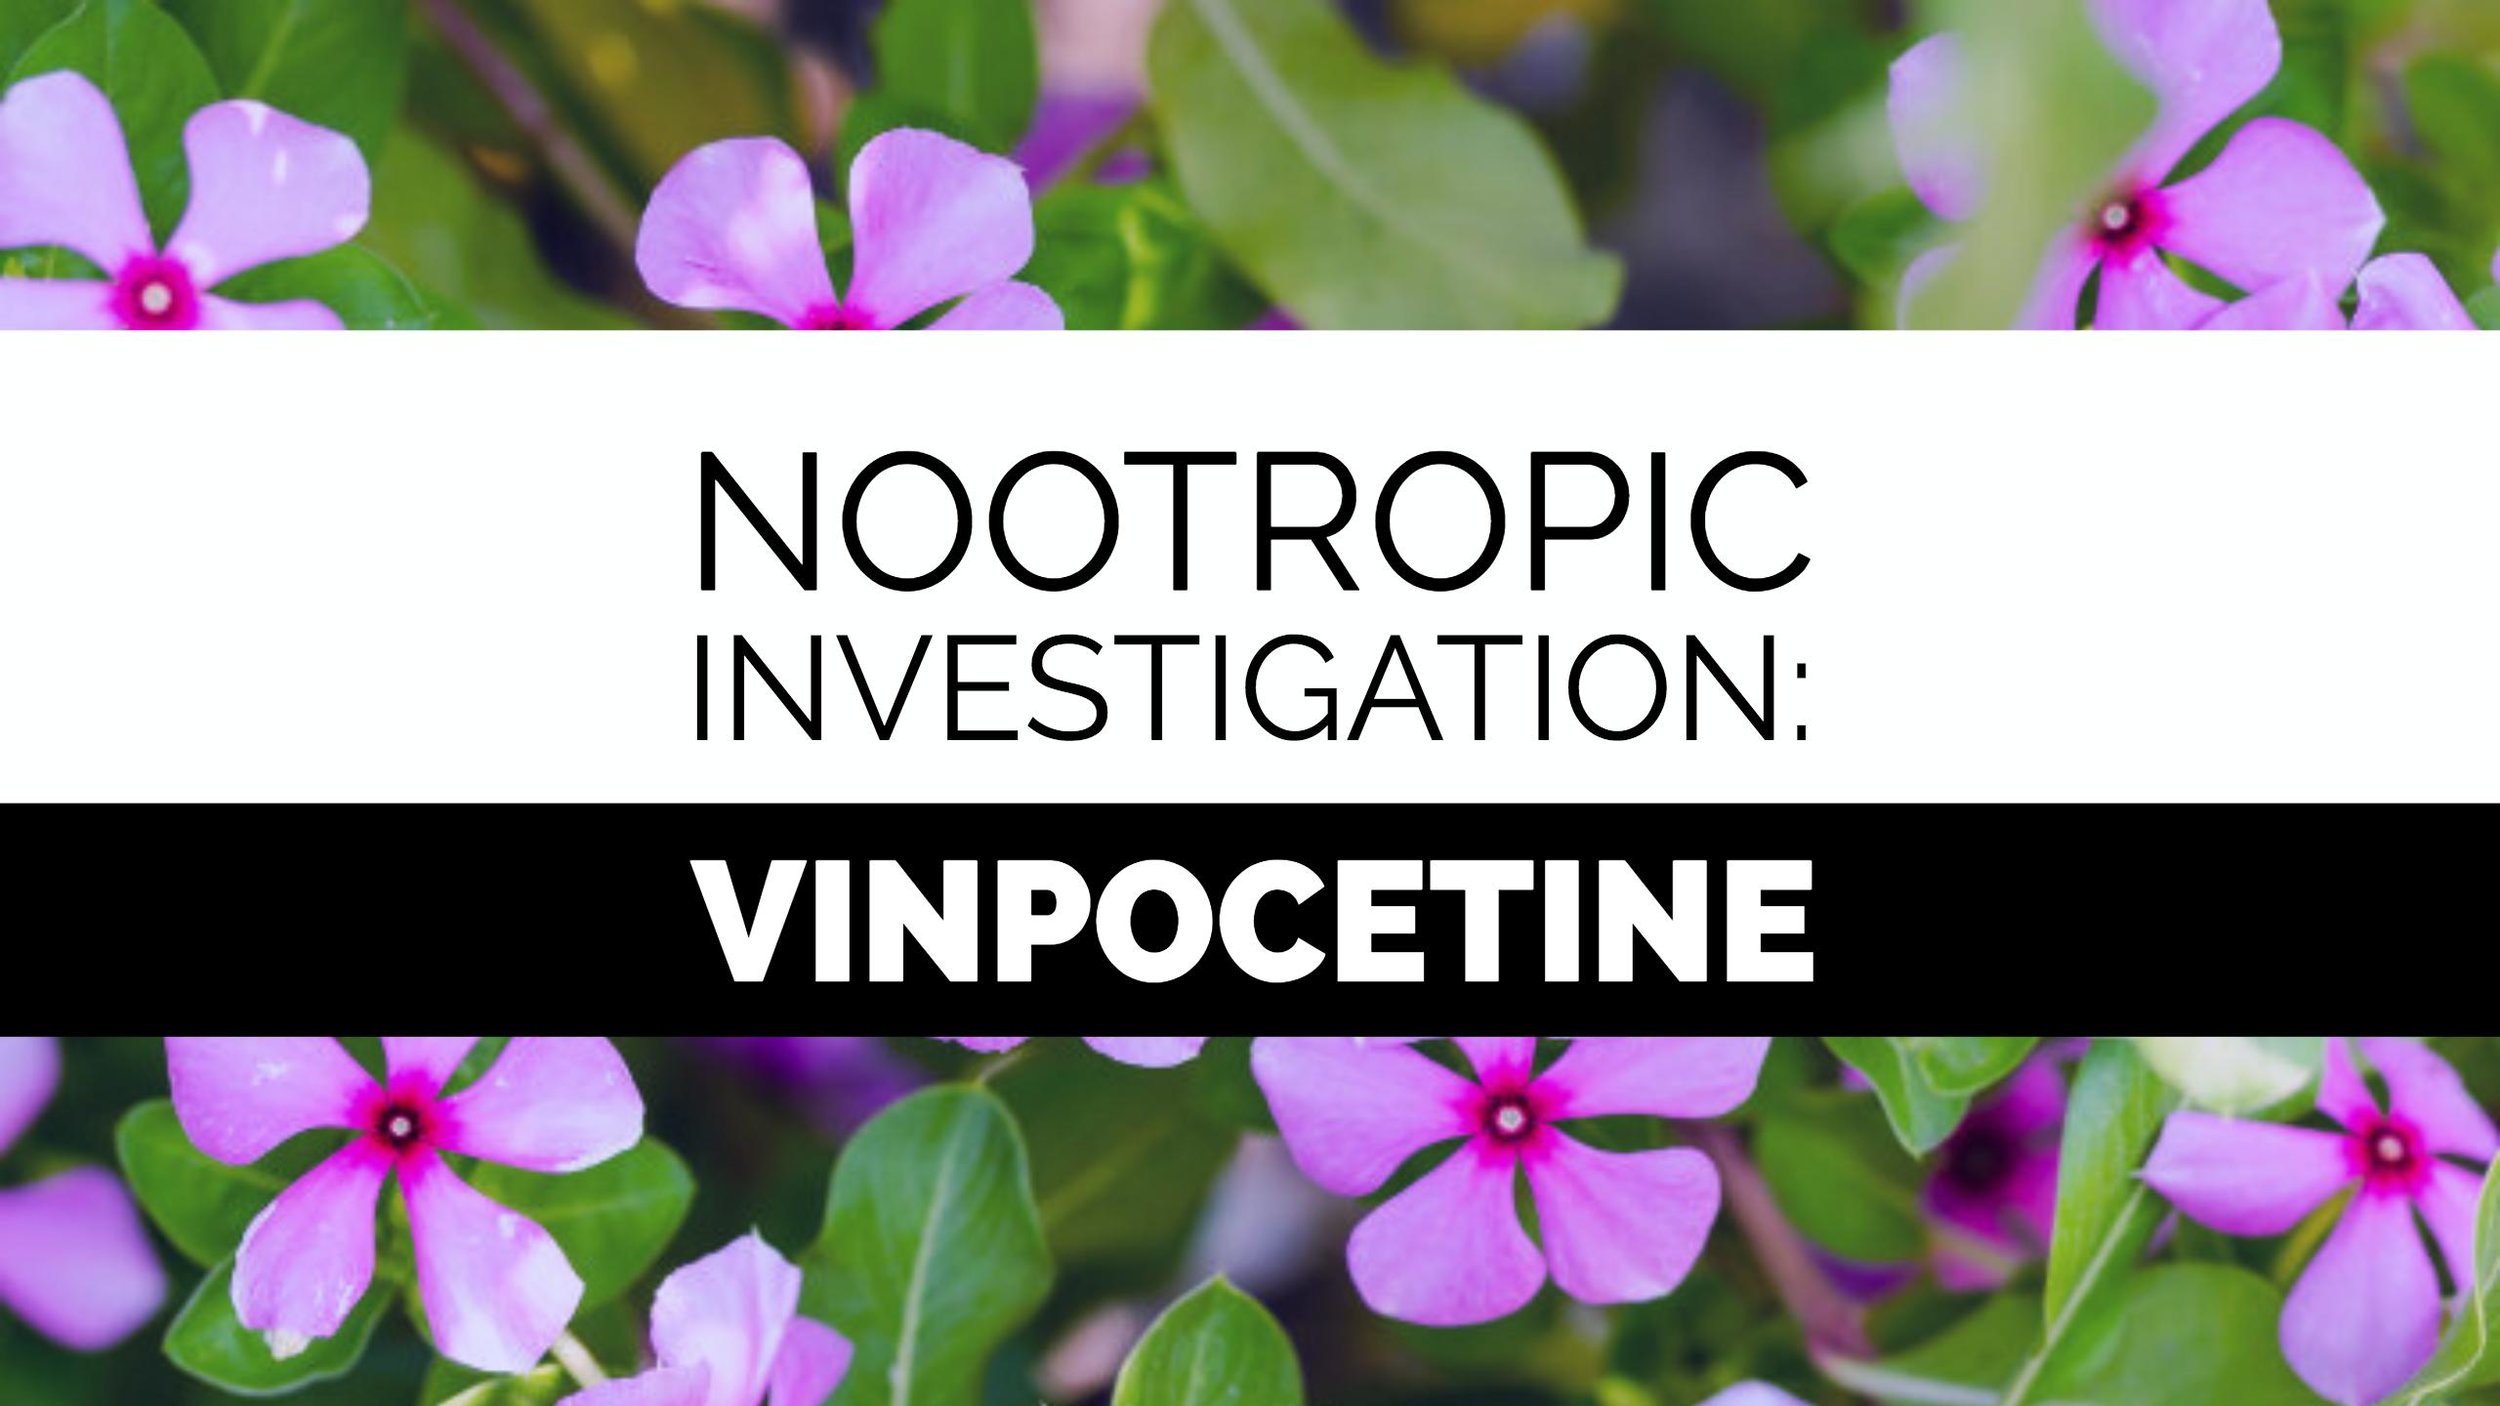 Nootropic investigation: Vinpocetine